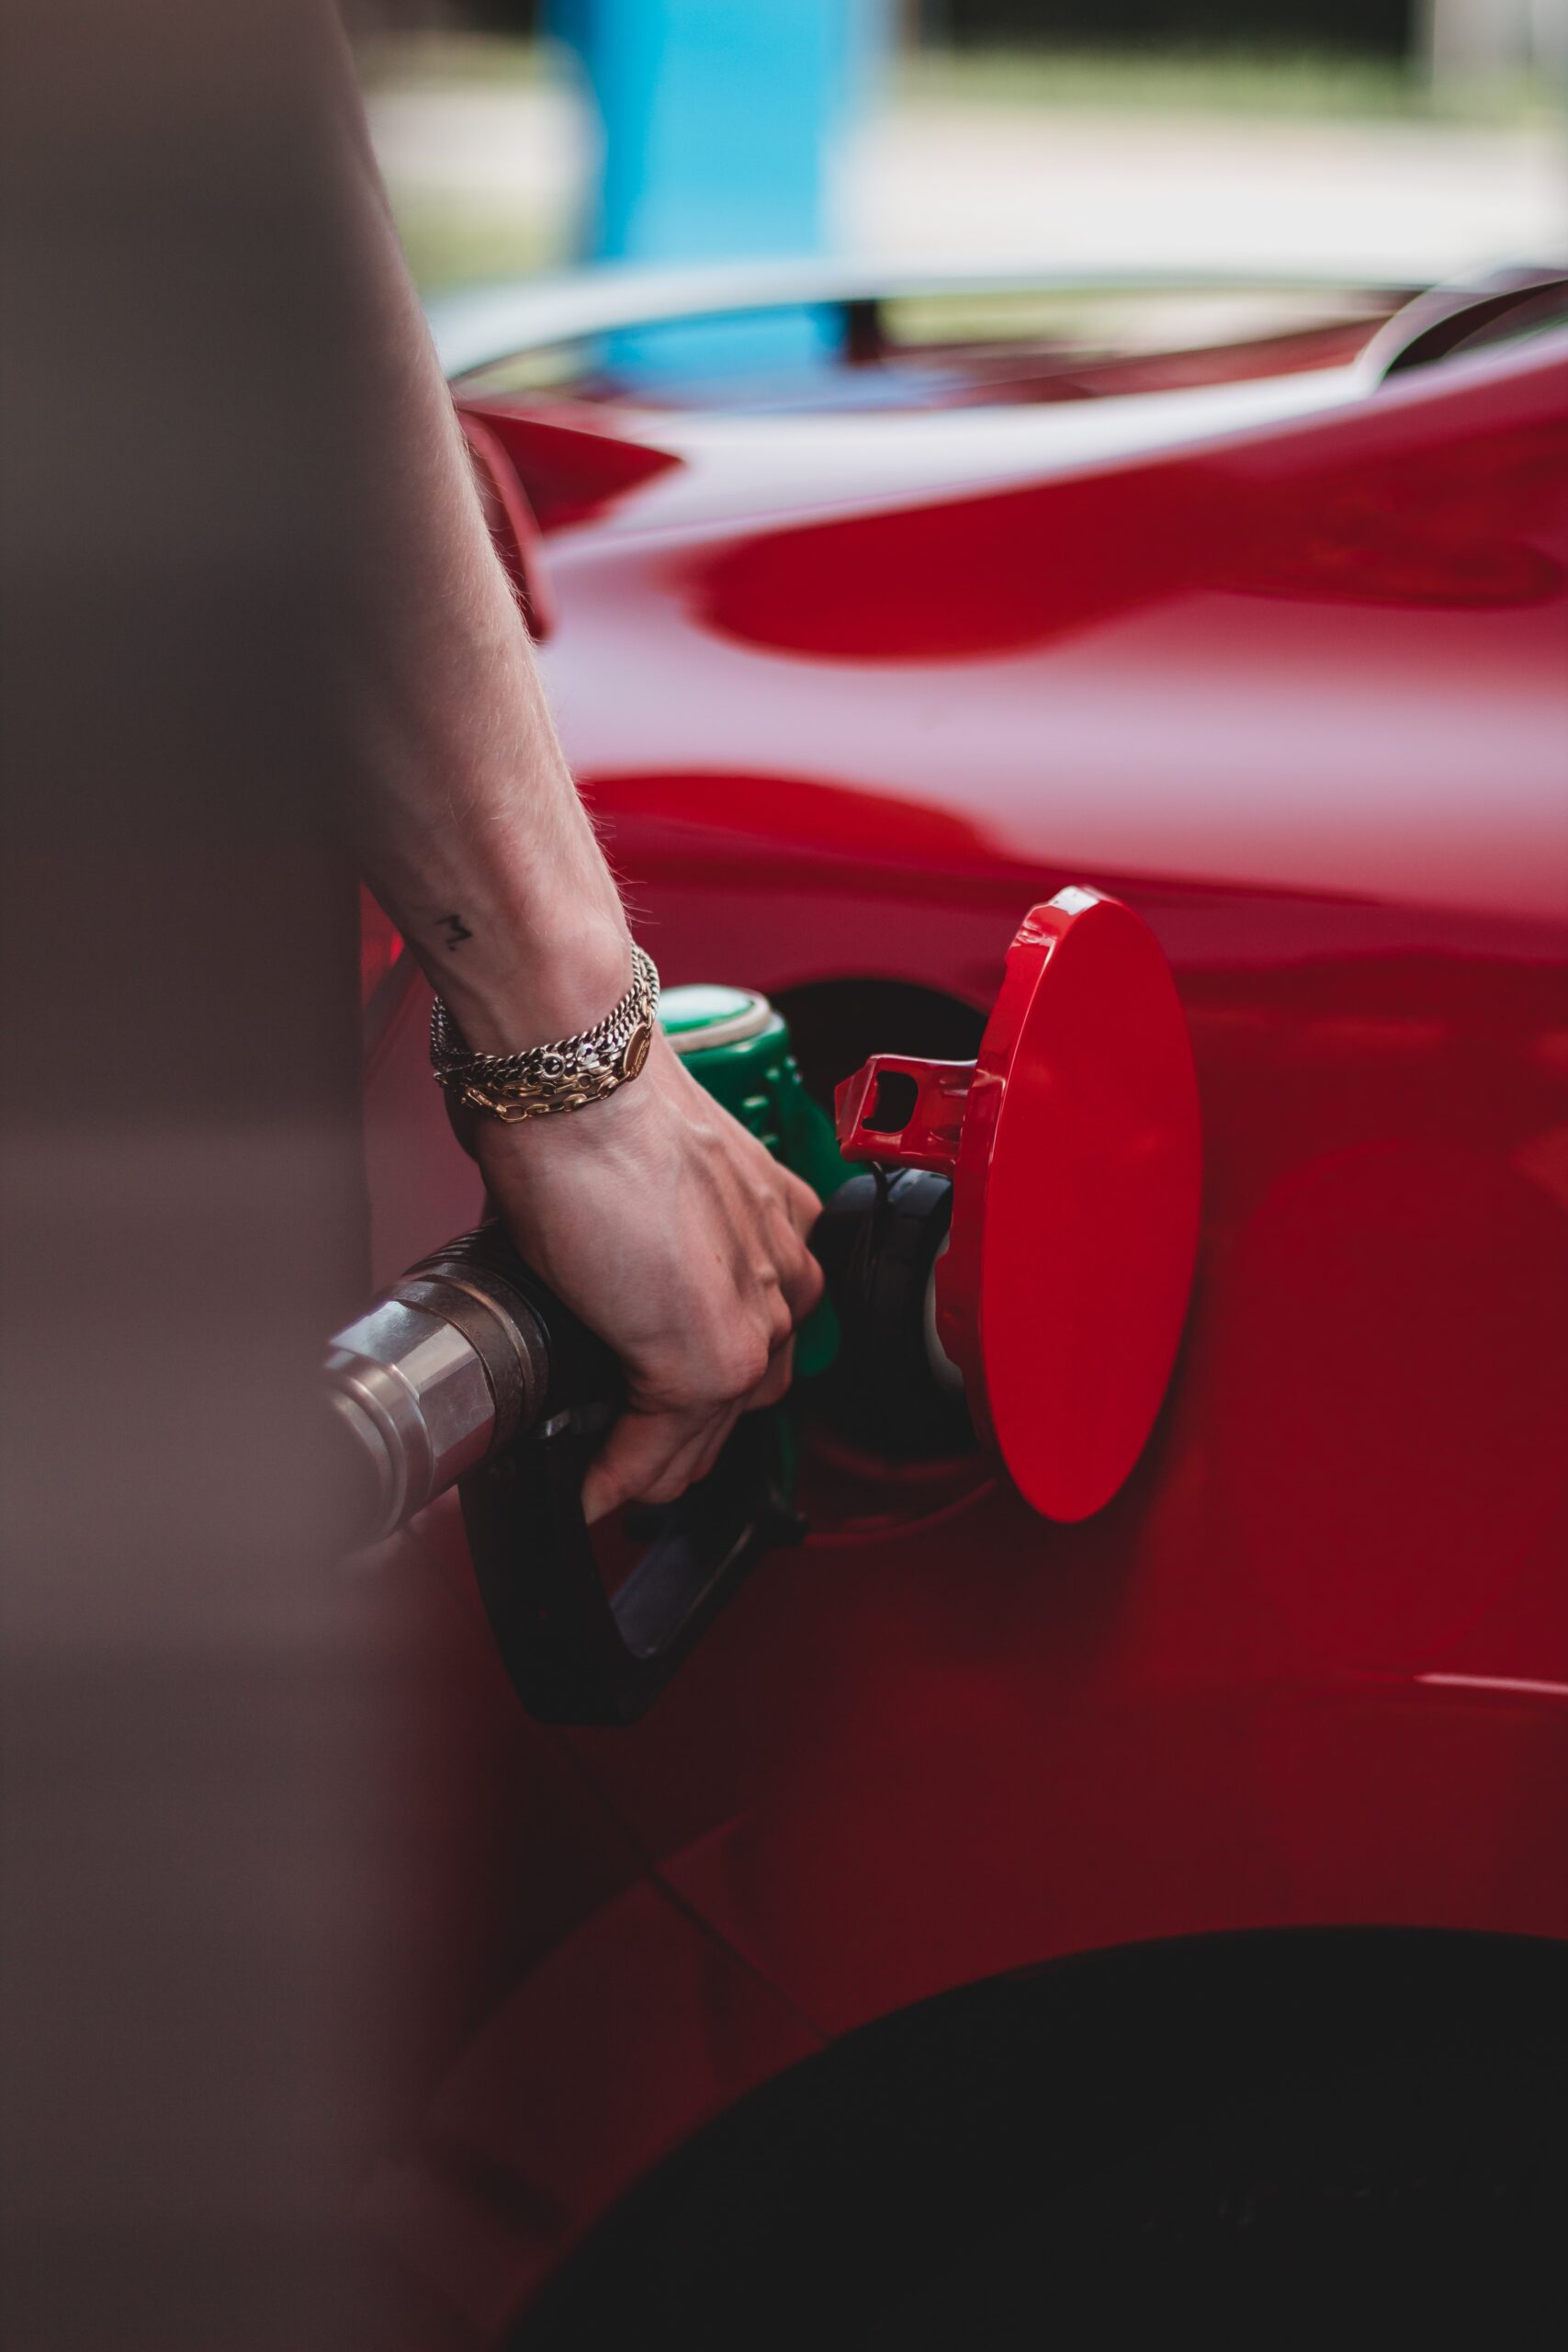 Moteurs hybrides et carburants : les erreurs à éviter